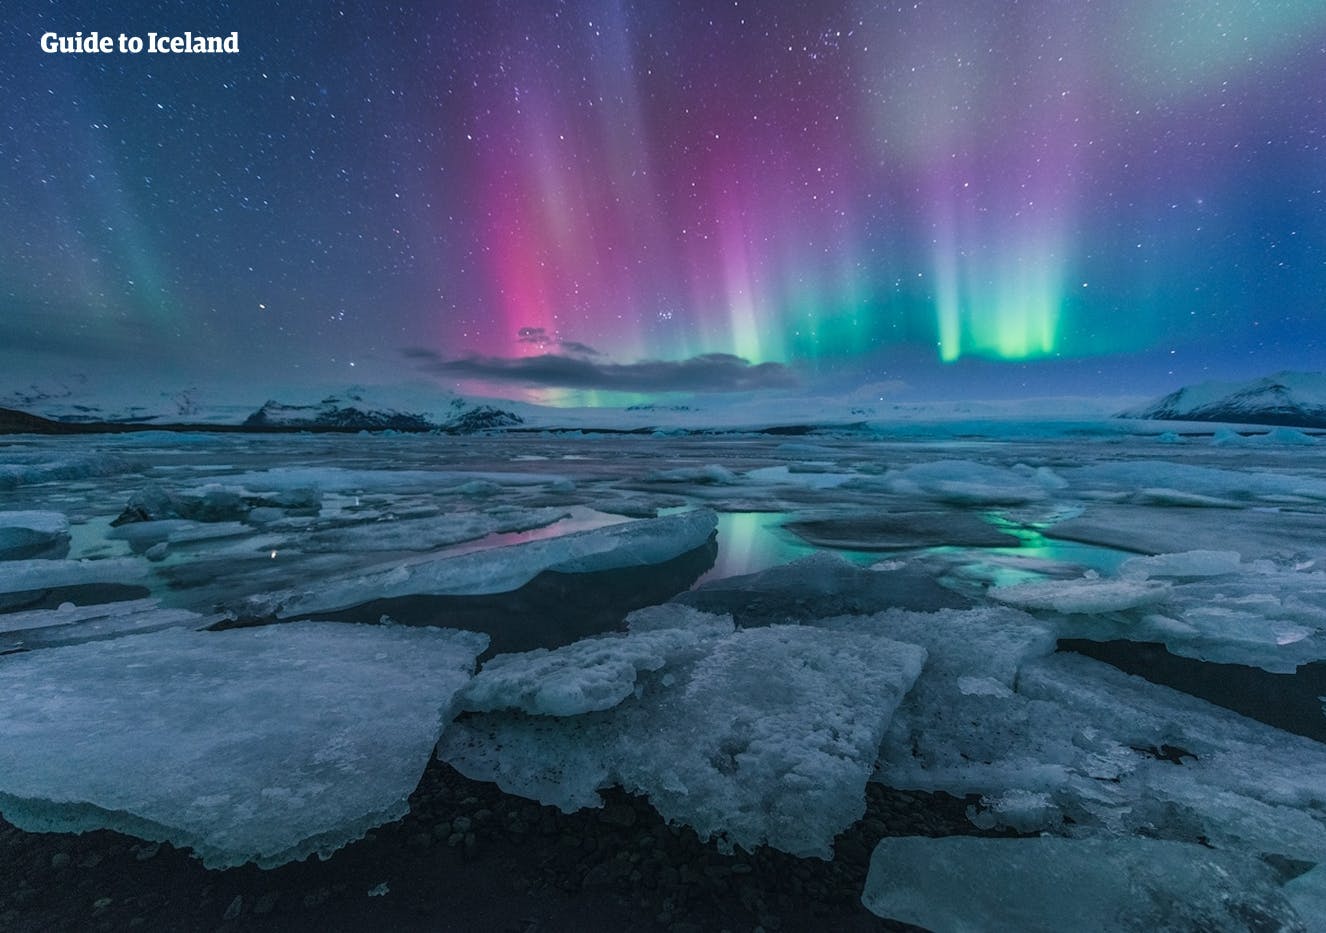 L'aurora boreale blu e rosa si specchia nella superficie blu della laguna glaciale di Jökulsárlón.